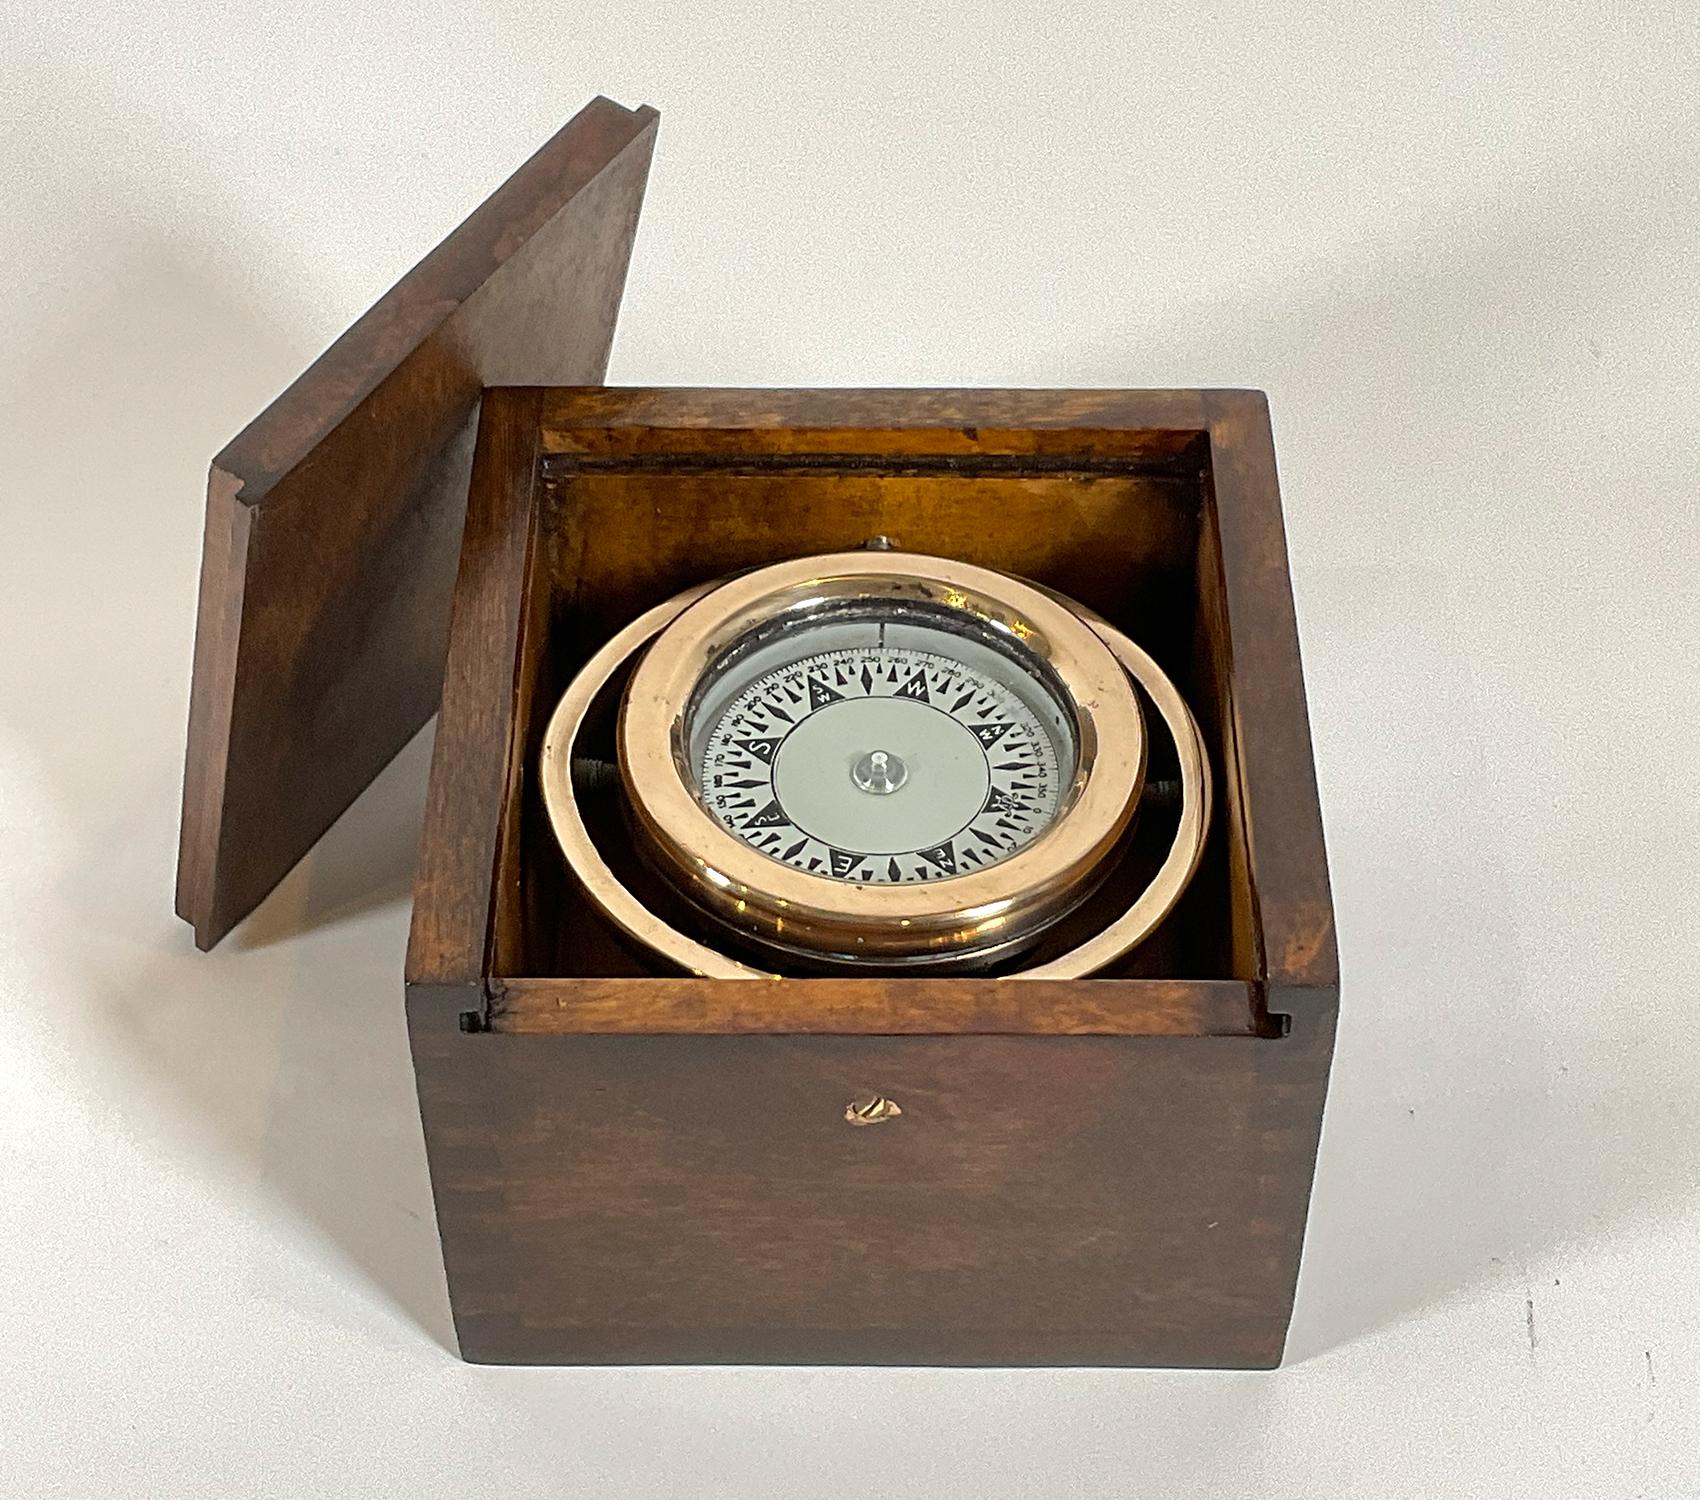 Dieses klassische Marineinstrument wurde von Wilcox Crittendon in Middletown, Connecticut, hergestellt. Marinekompass aus massivem Messing in einer lackierten Holzbox.

Gewicht: 2 LBS
Gesamtabmessungen: 3